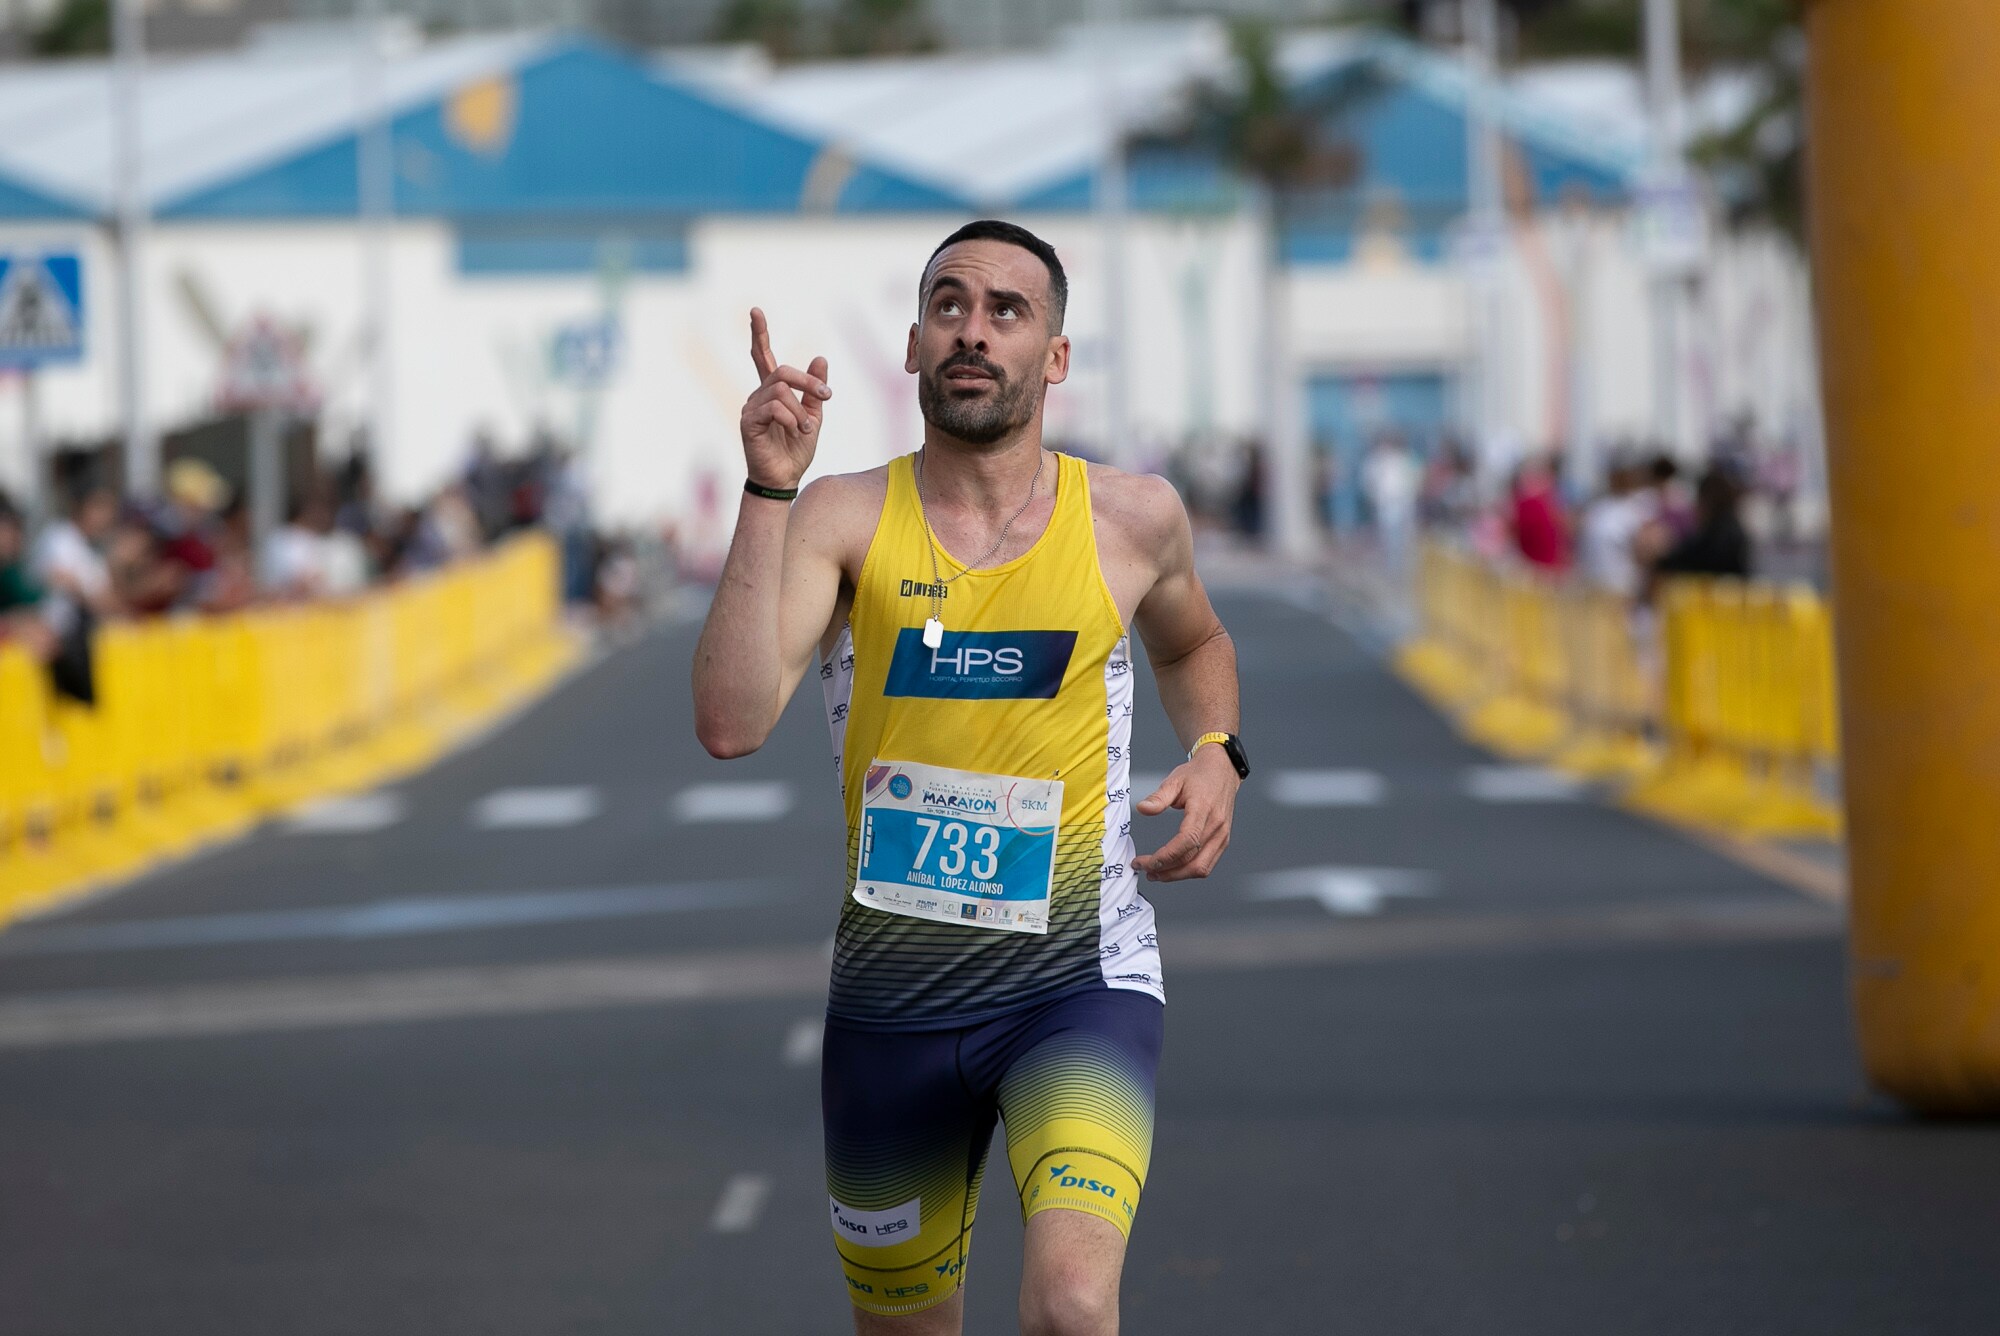 La XIX Media Maratón de Las Palmas, un año más en las mejores manos con HPS